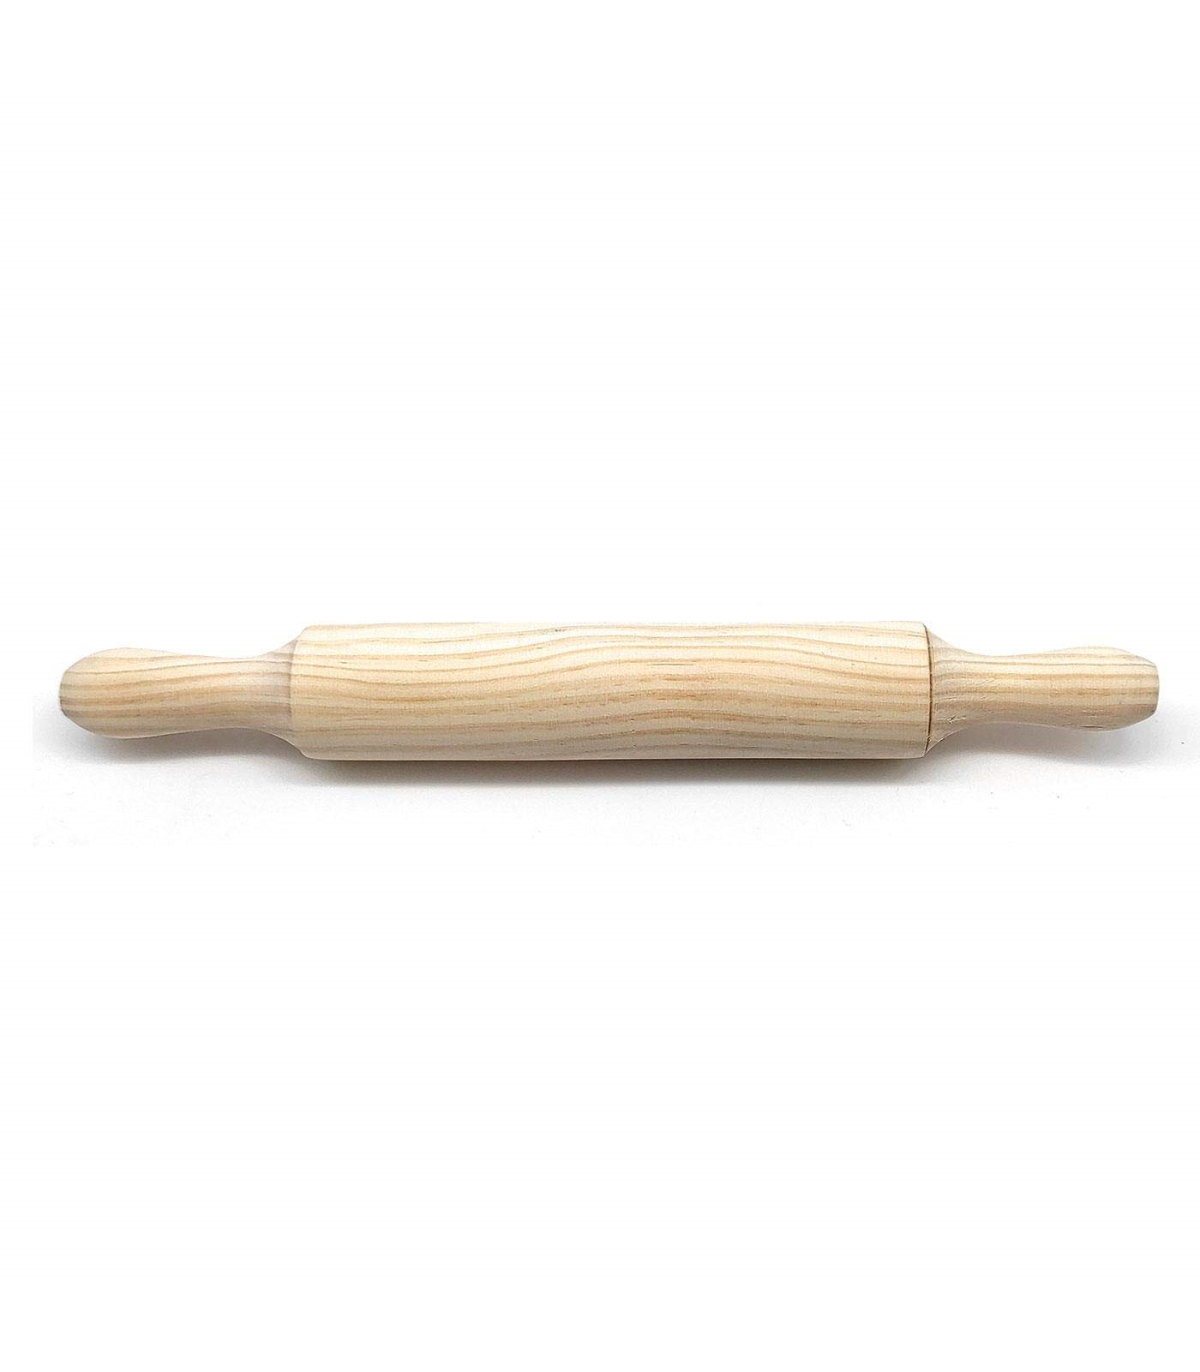 Rodillo de madera para amasar de 40 x 5 cm para cocina o repostería.  Cilindro de madera para realizar labores de pastelería. Ute